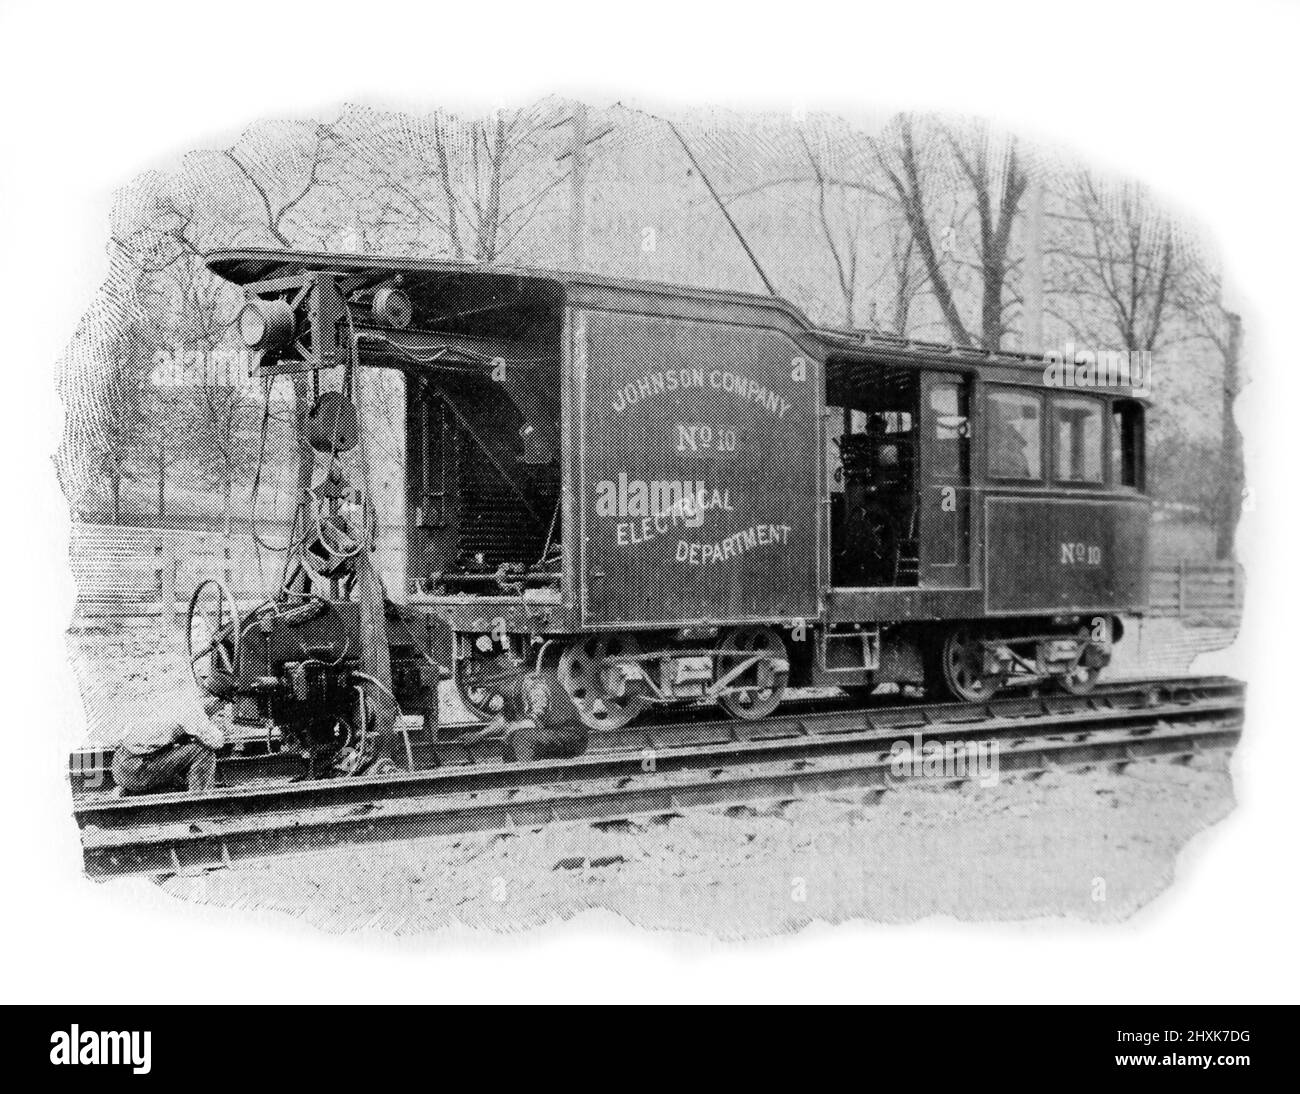 Un'auto elettrica per saldatura appartenente alla Johnson Company. Fotografia in bianco e nero scattata intorno al 1890s Foto Stock